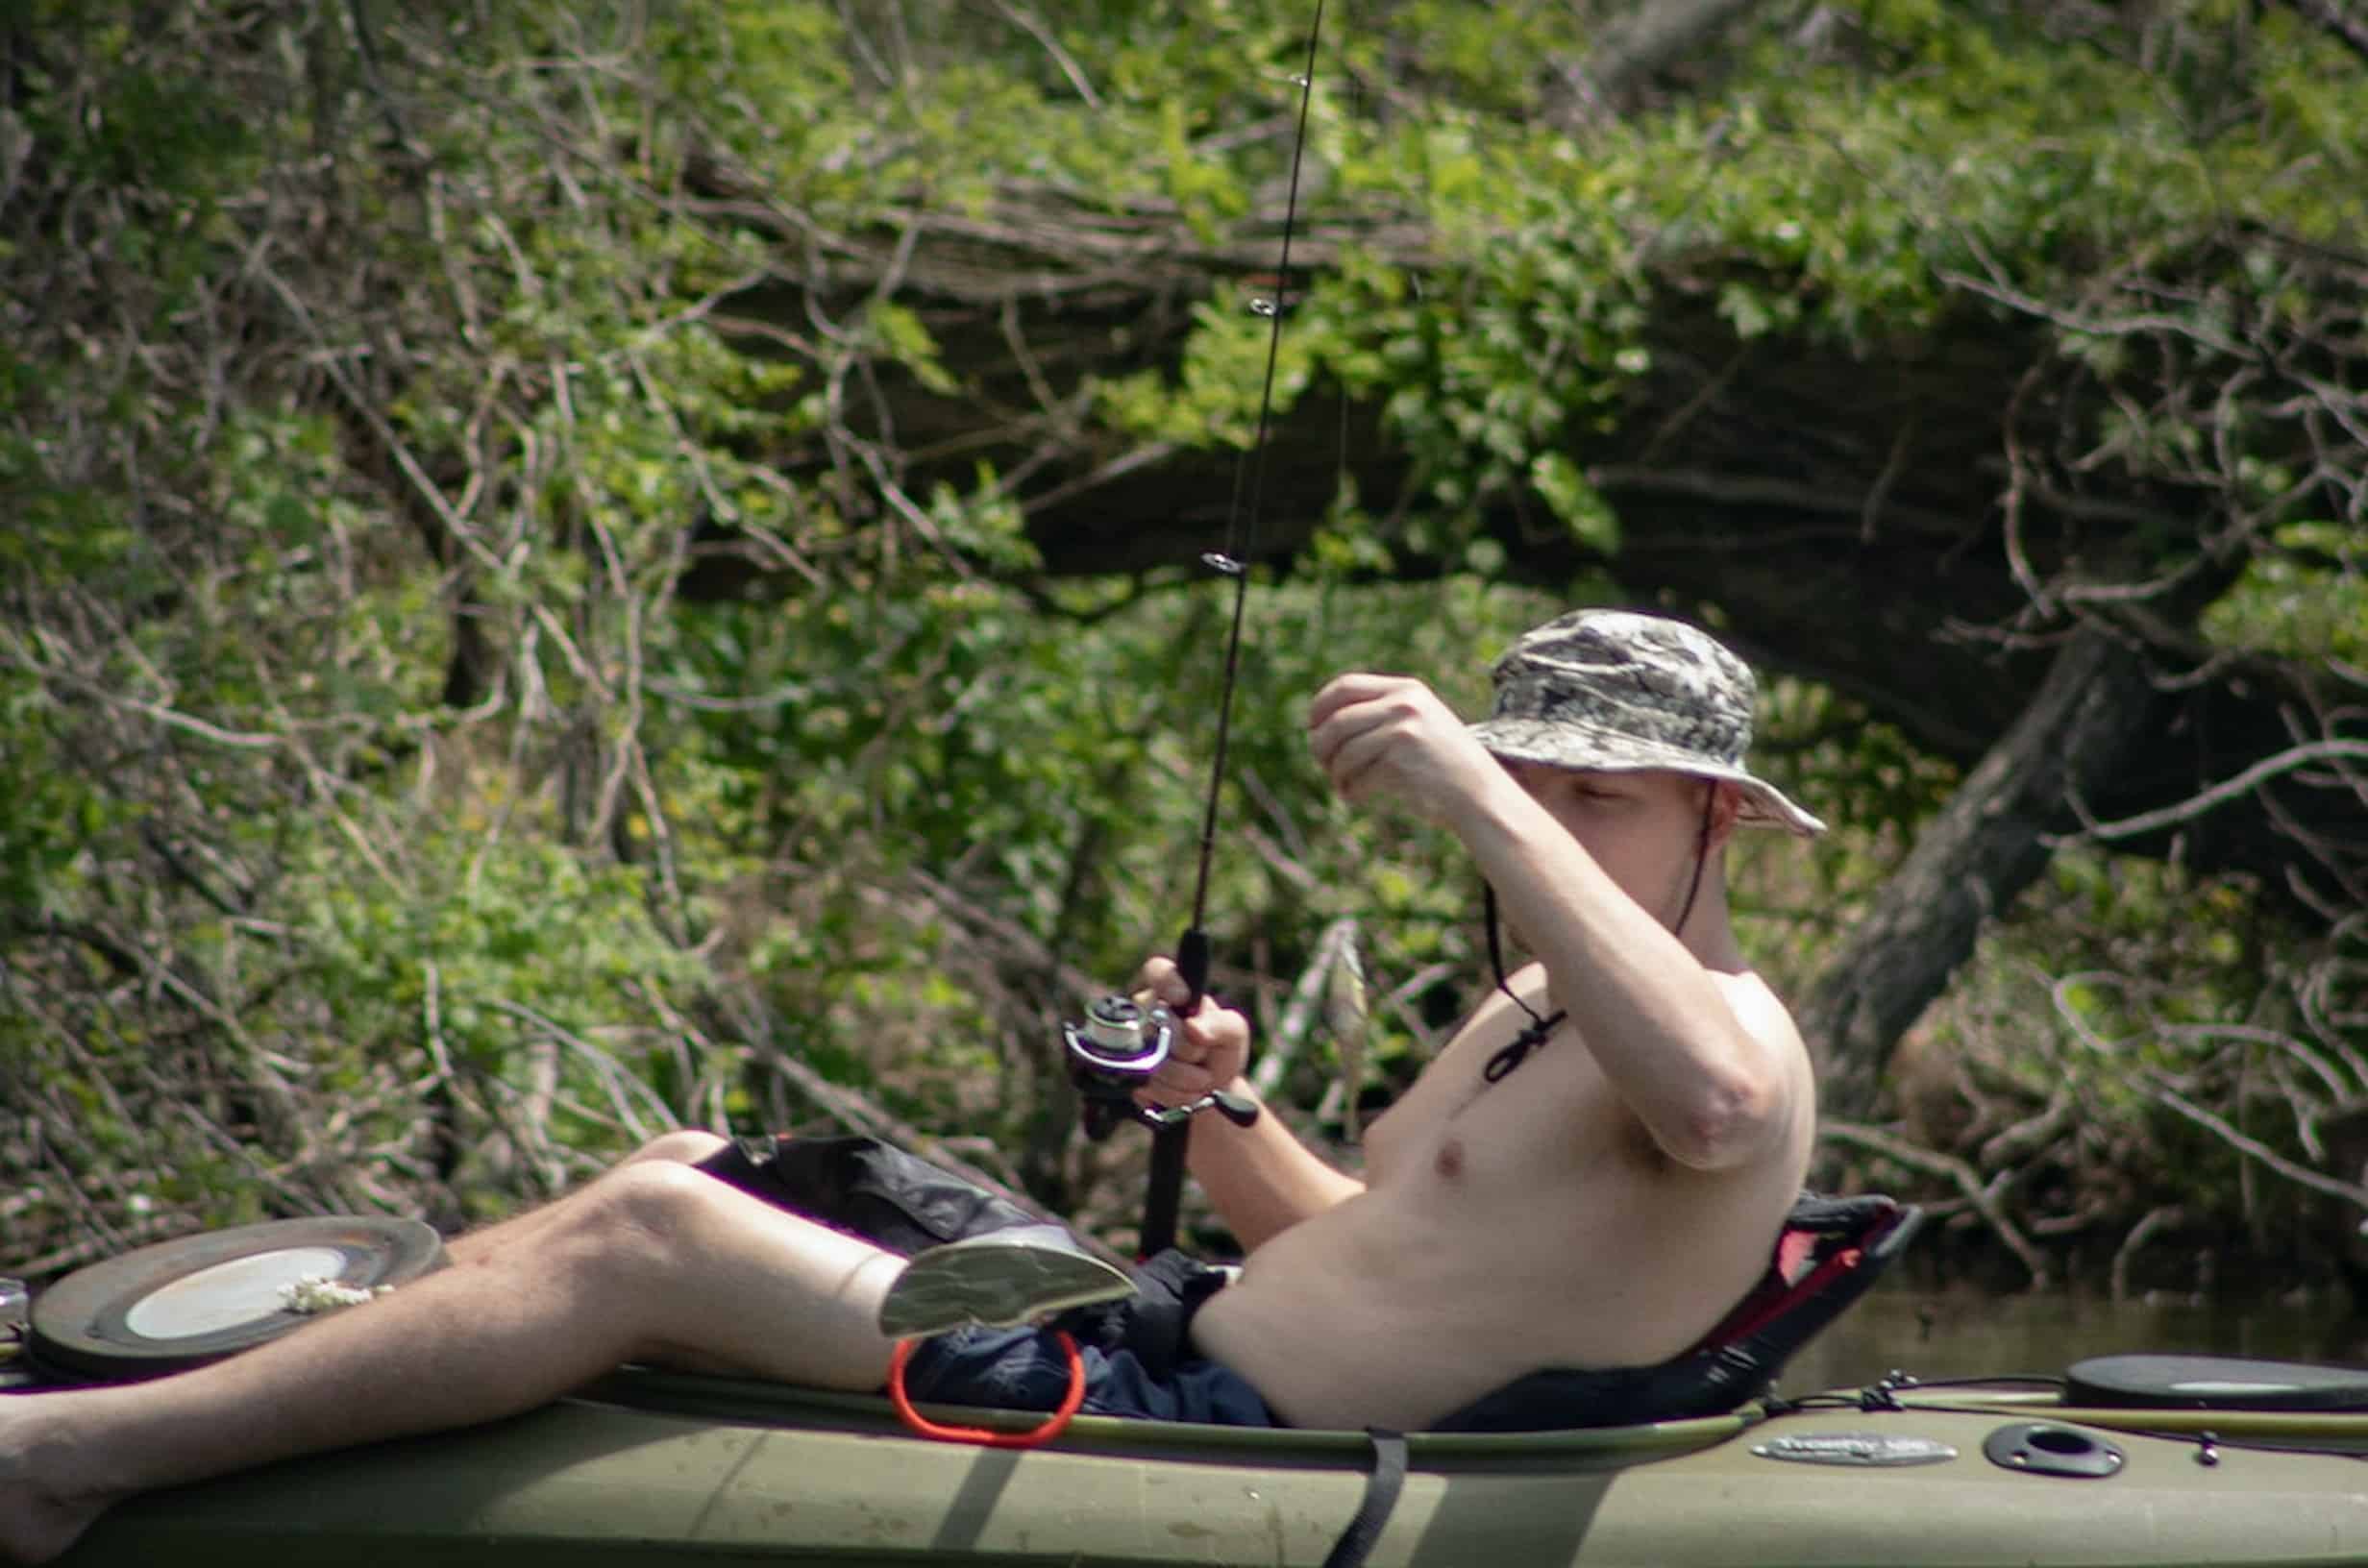 Man fishing in a canoe